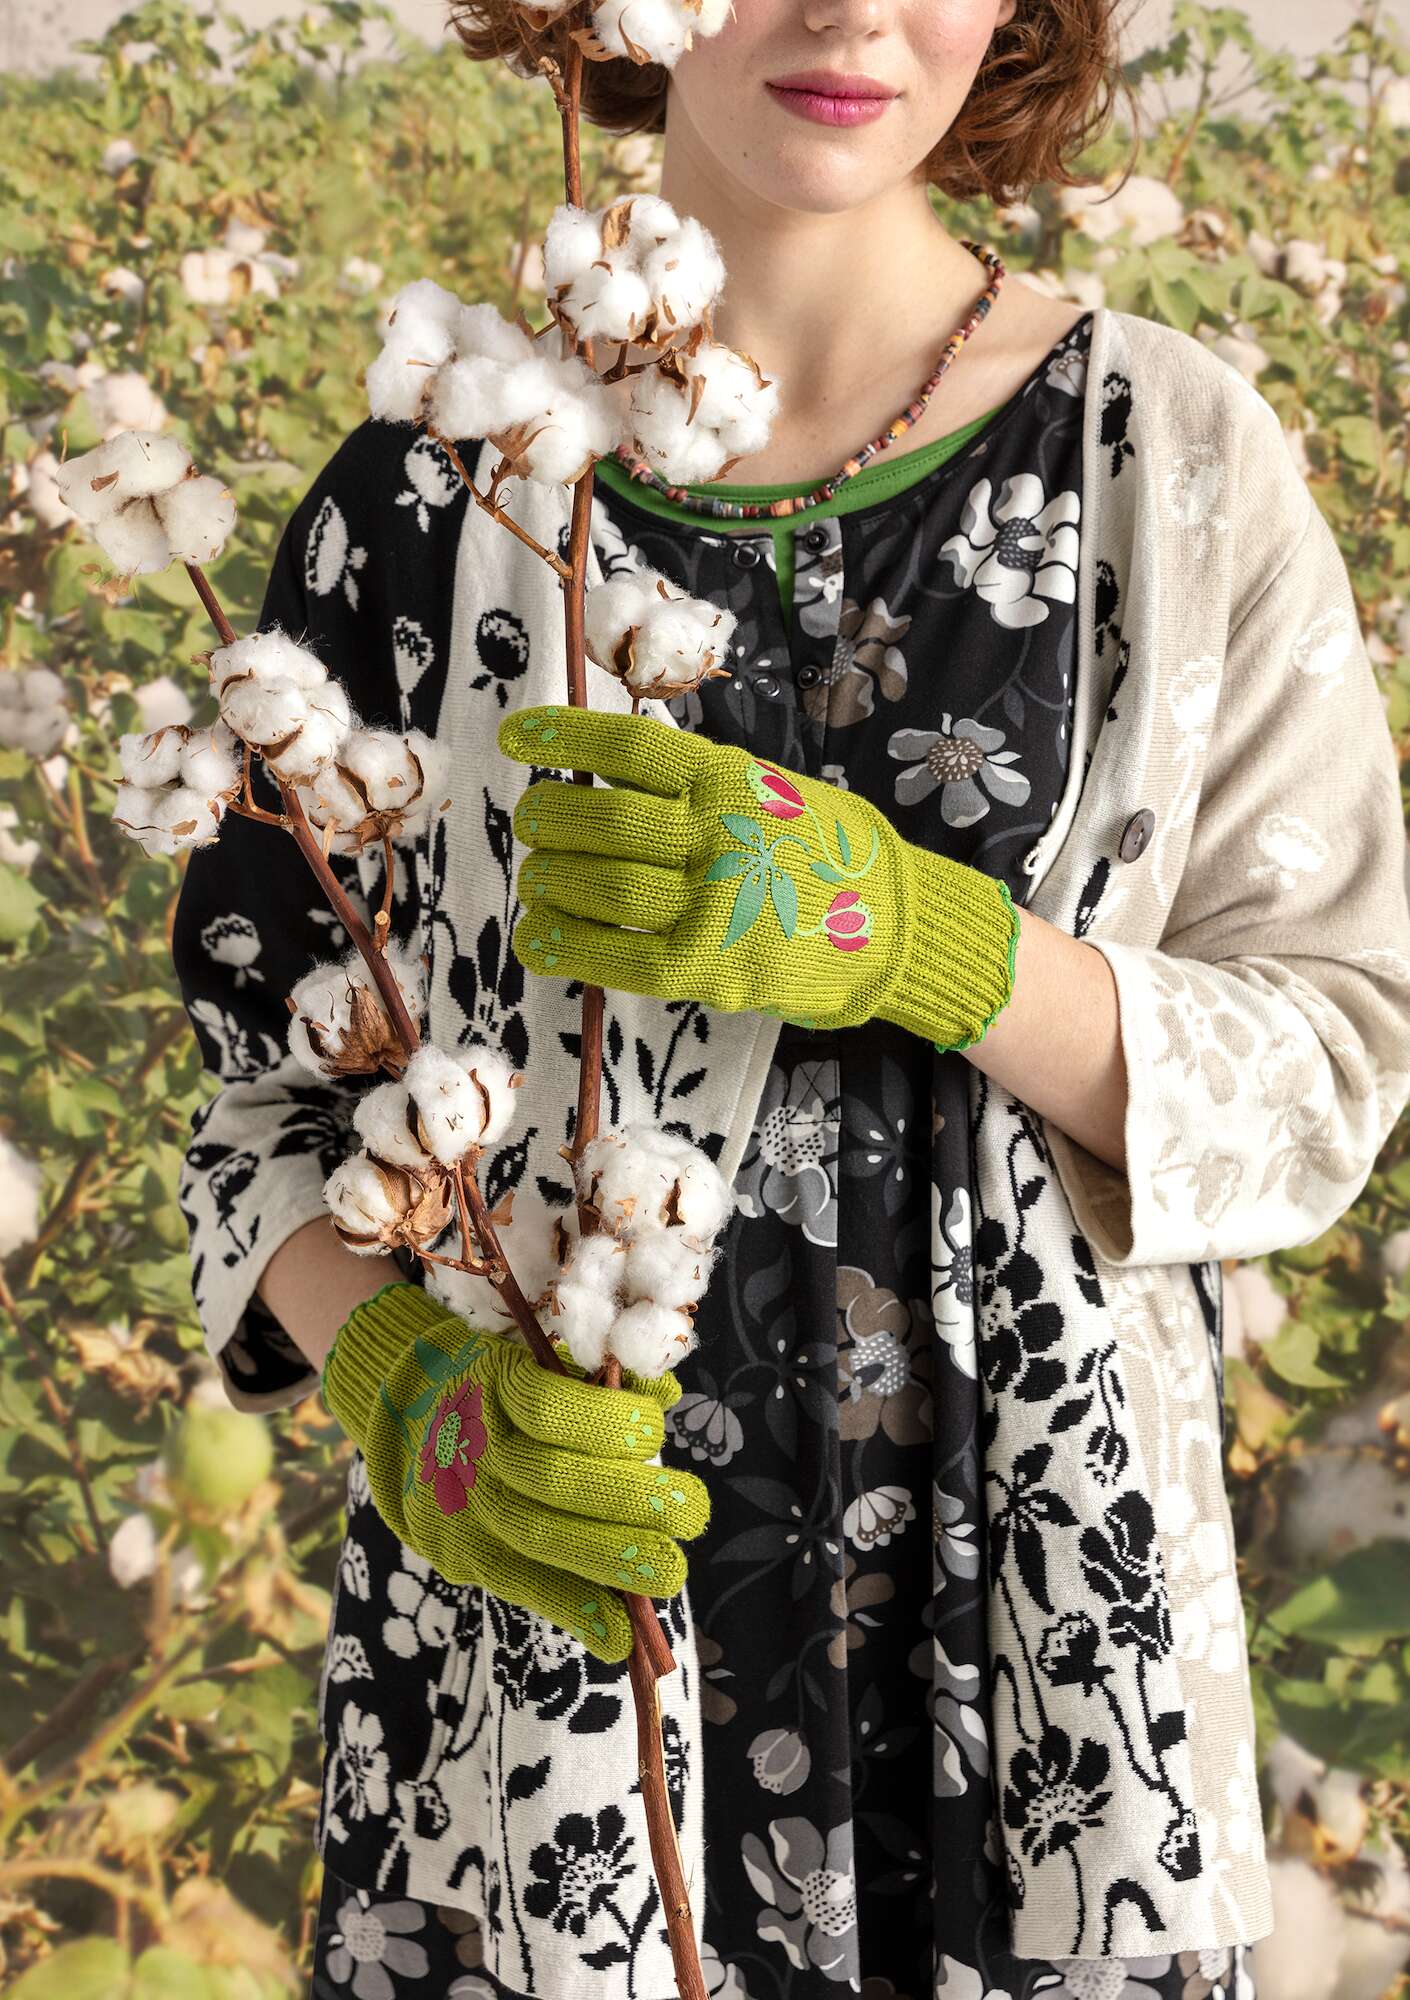 “Gardener” gardening gloves in recycled polyester kiwi thumbnail